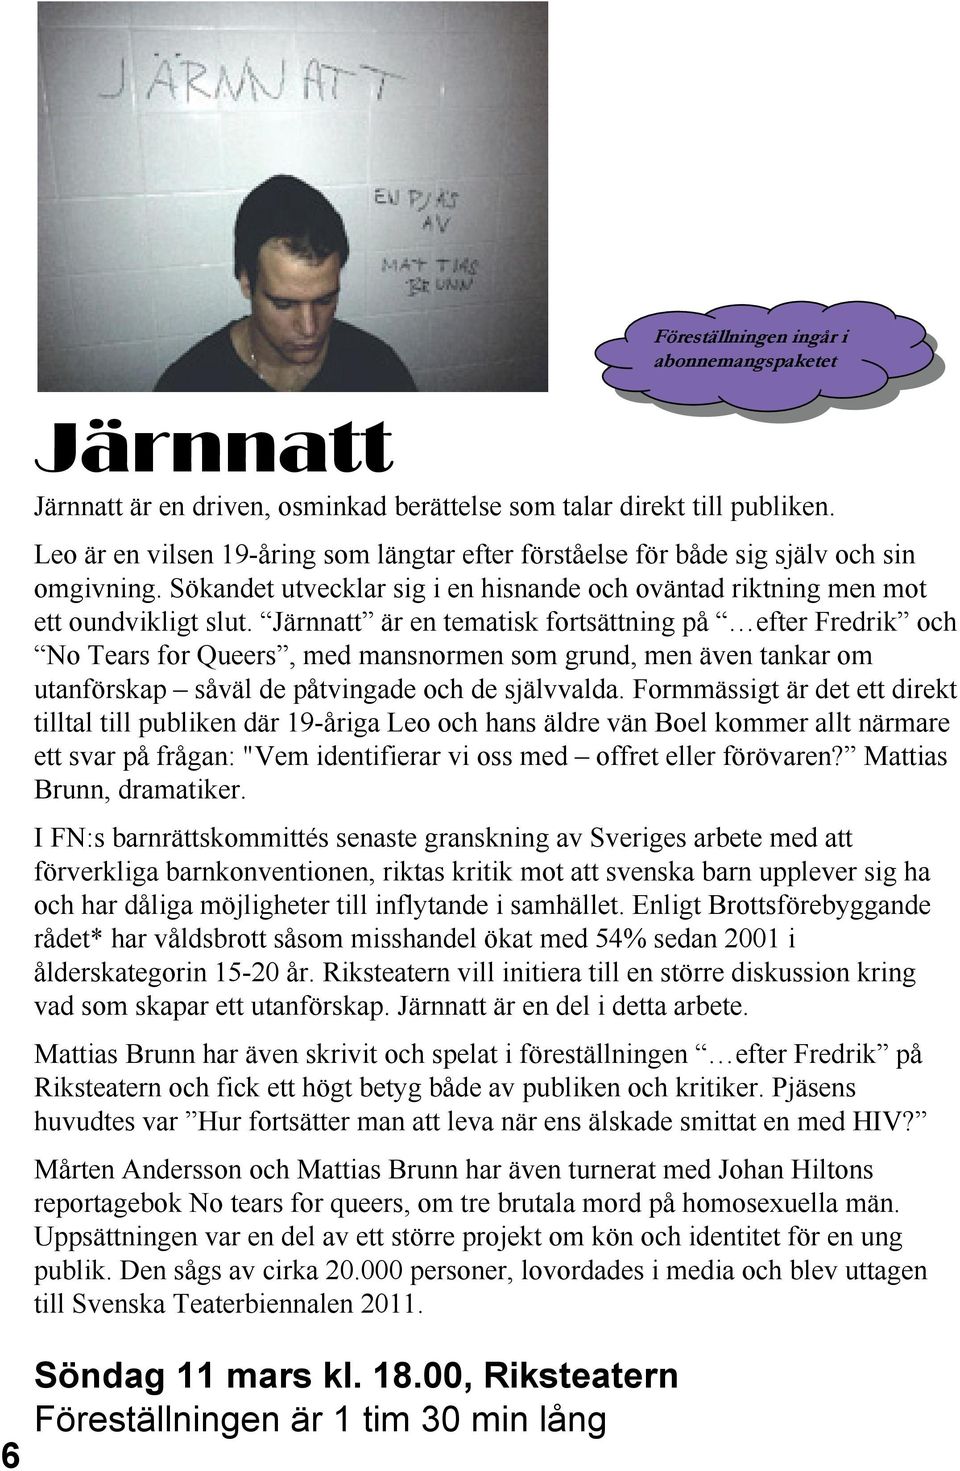 Järnnatt är en tematisk fortsättning på efter Fredrik och No Tears for Queers, med mansnormen som grund, men även tankar om utanförskap såväl de påtvingade och de självvalda.